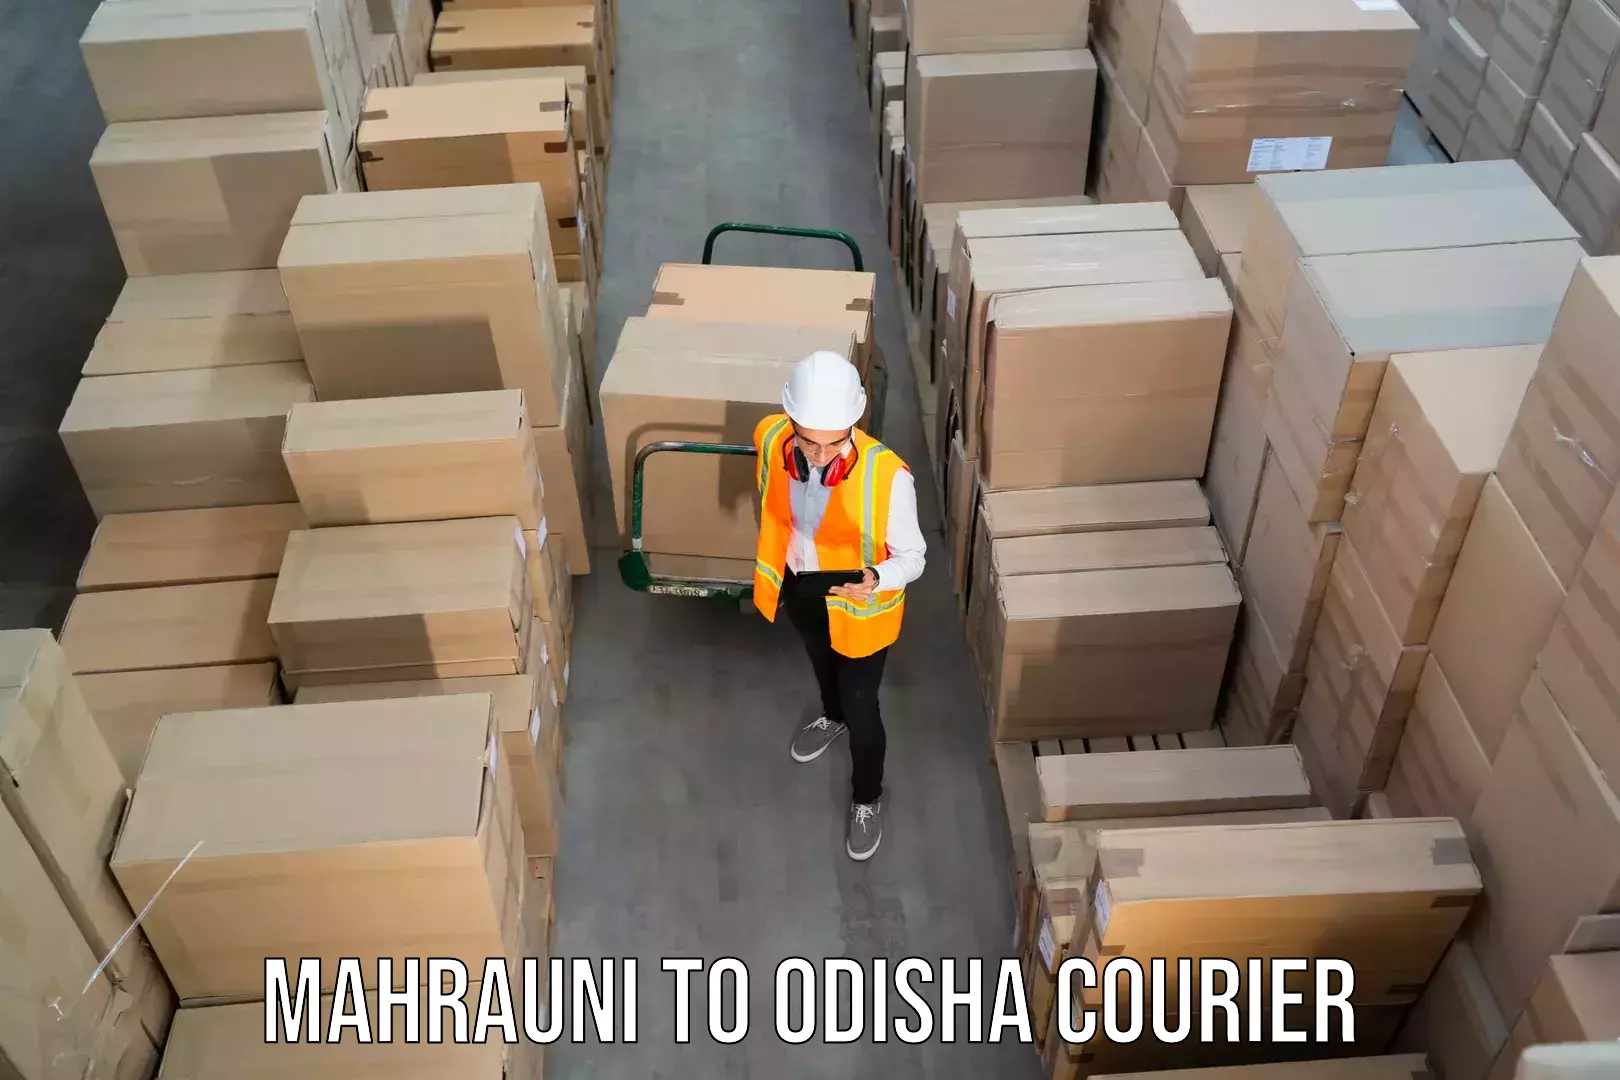 Global courier networks Mahrauni to Odisha